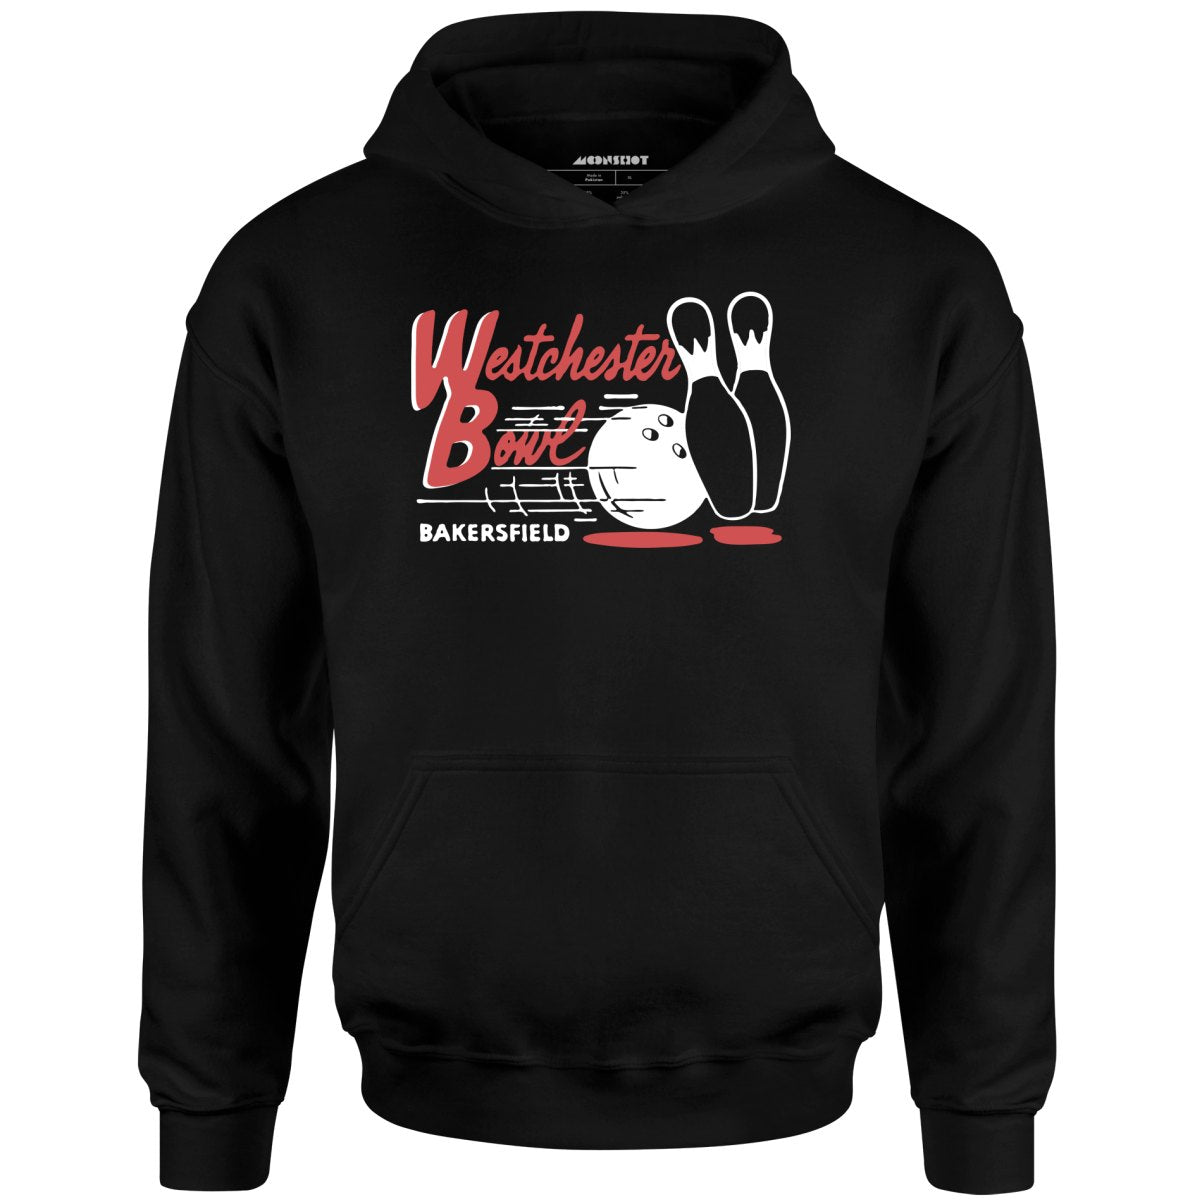 Westchester Bowl - Bakersfield, CA - Vintage Bowling Alley - Unisex Hoodie